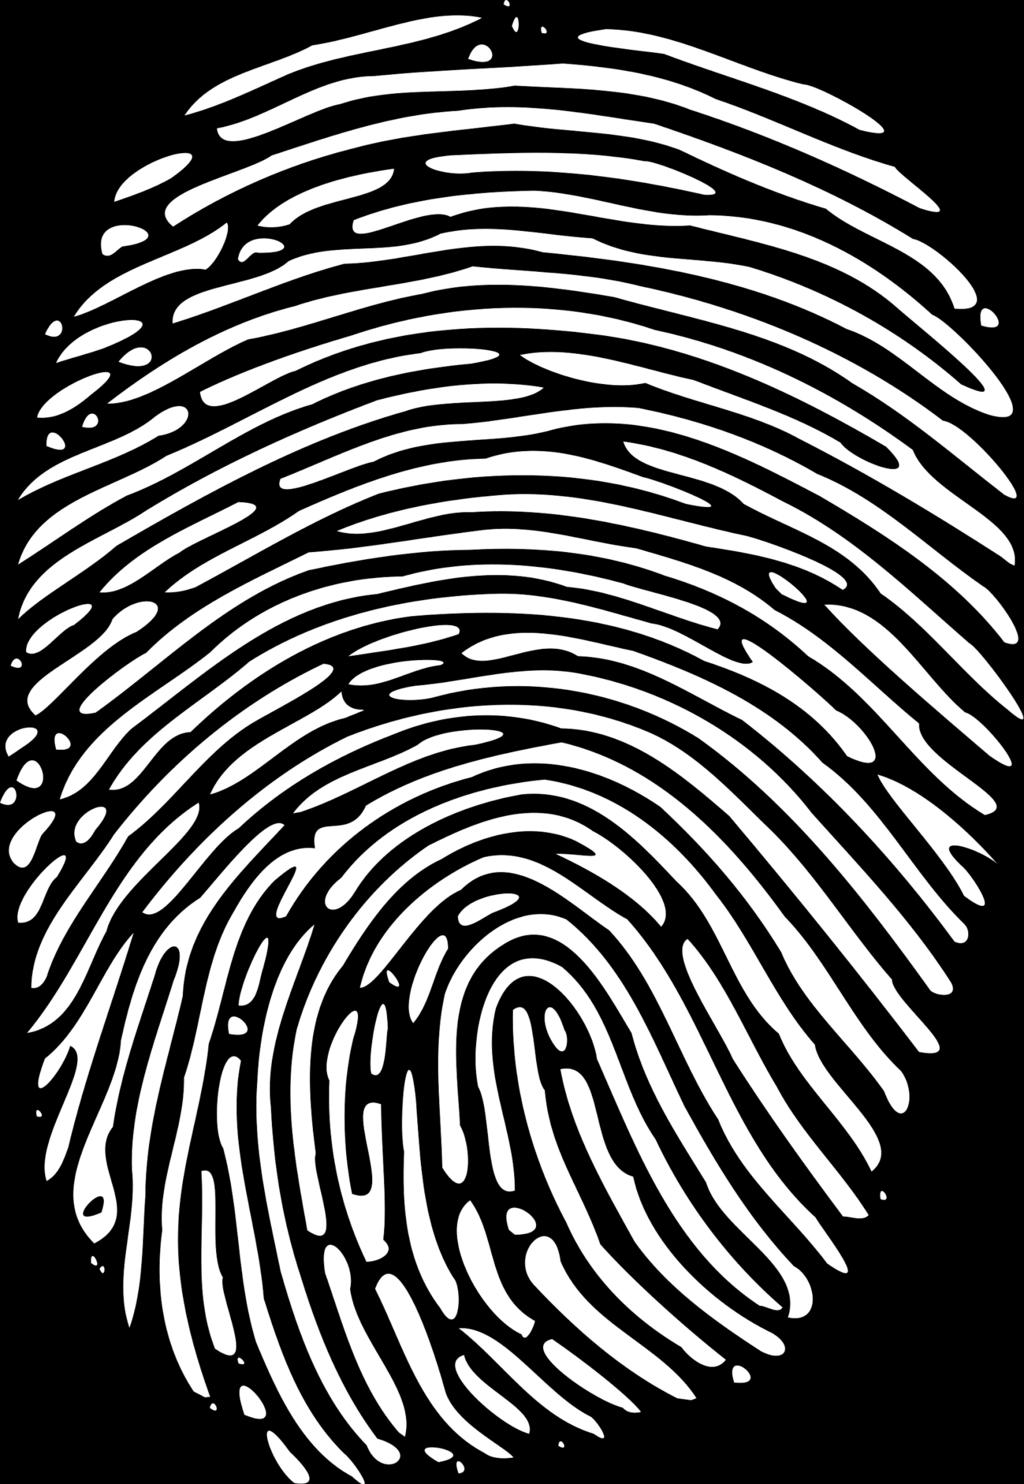 Hi-Def Fingerprinting Eliminates Blind Defense Hi-Def Fingerprint IP Address Header & User Agent